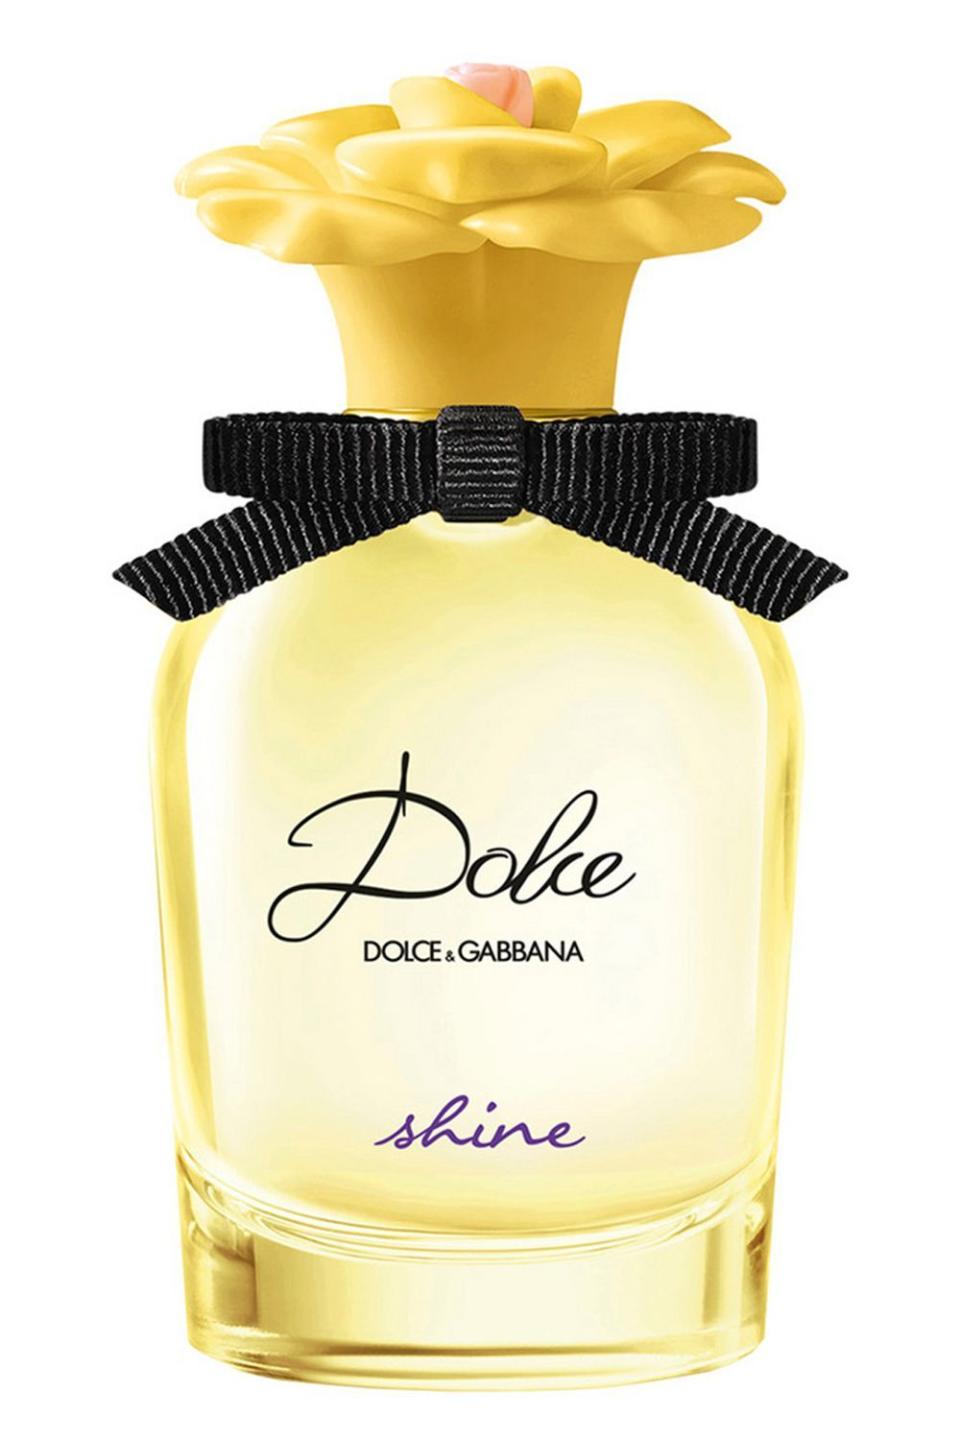 12) Dolce & Gabbana Shine